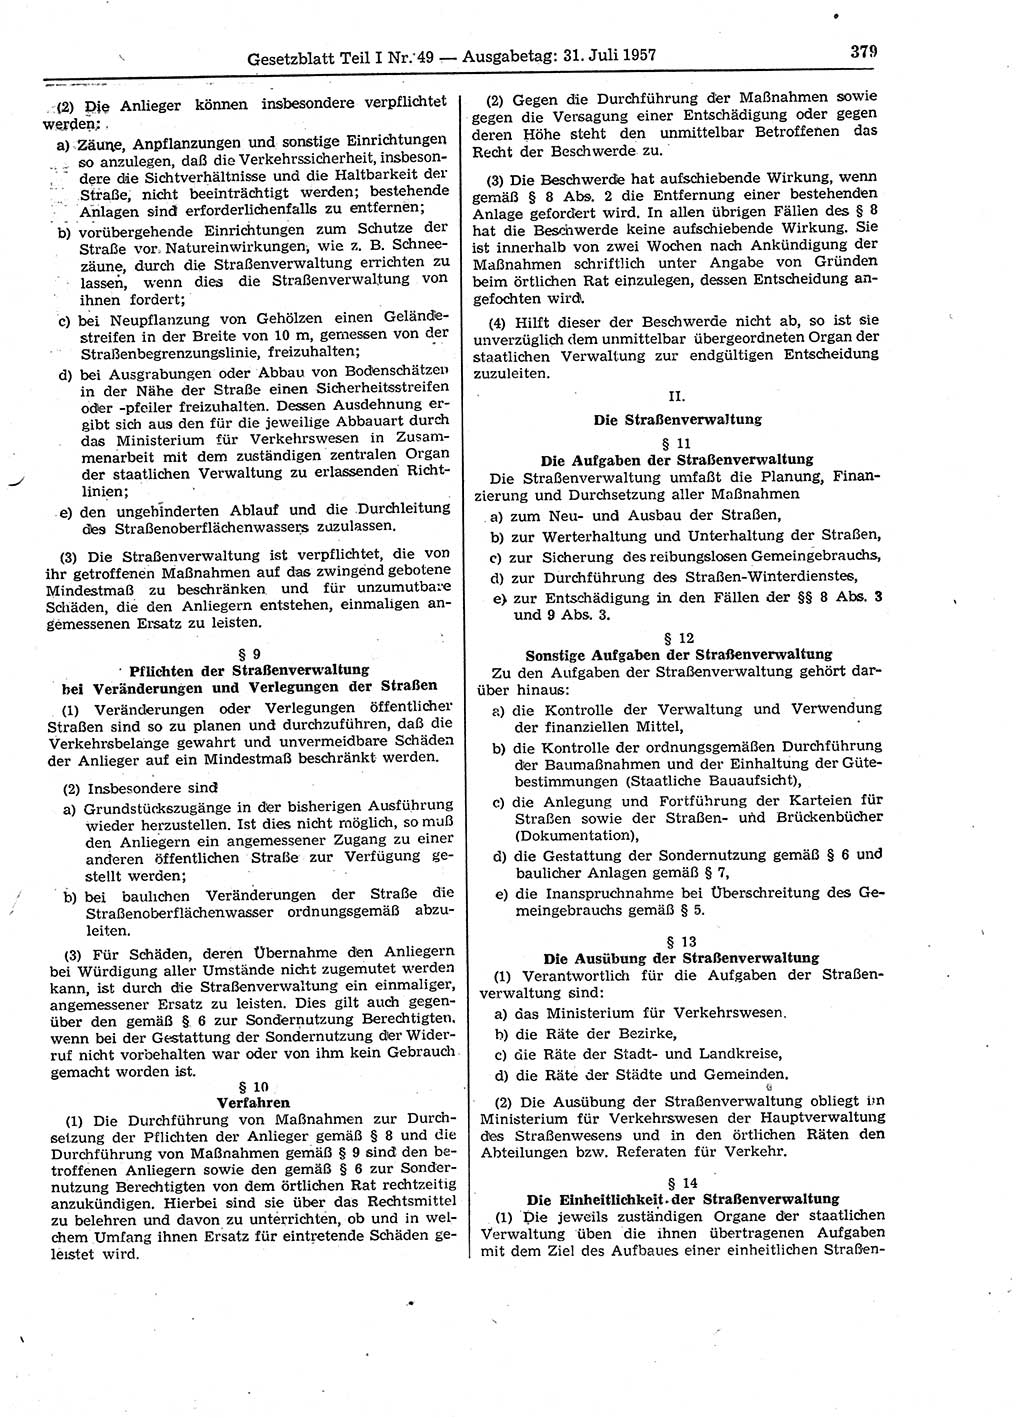 Gesetzblatt (GBl.) der Deutschen Demokratischen Republik (DDR) Teil Ⅰ 1957, Seite 379 (GBl. DDR Ⅰ 1957, S. 379)